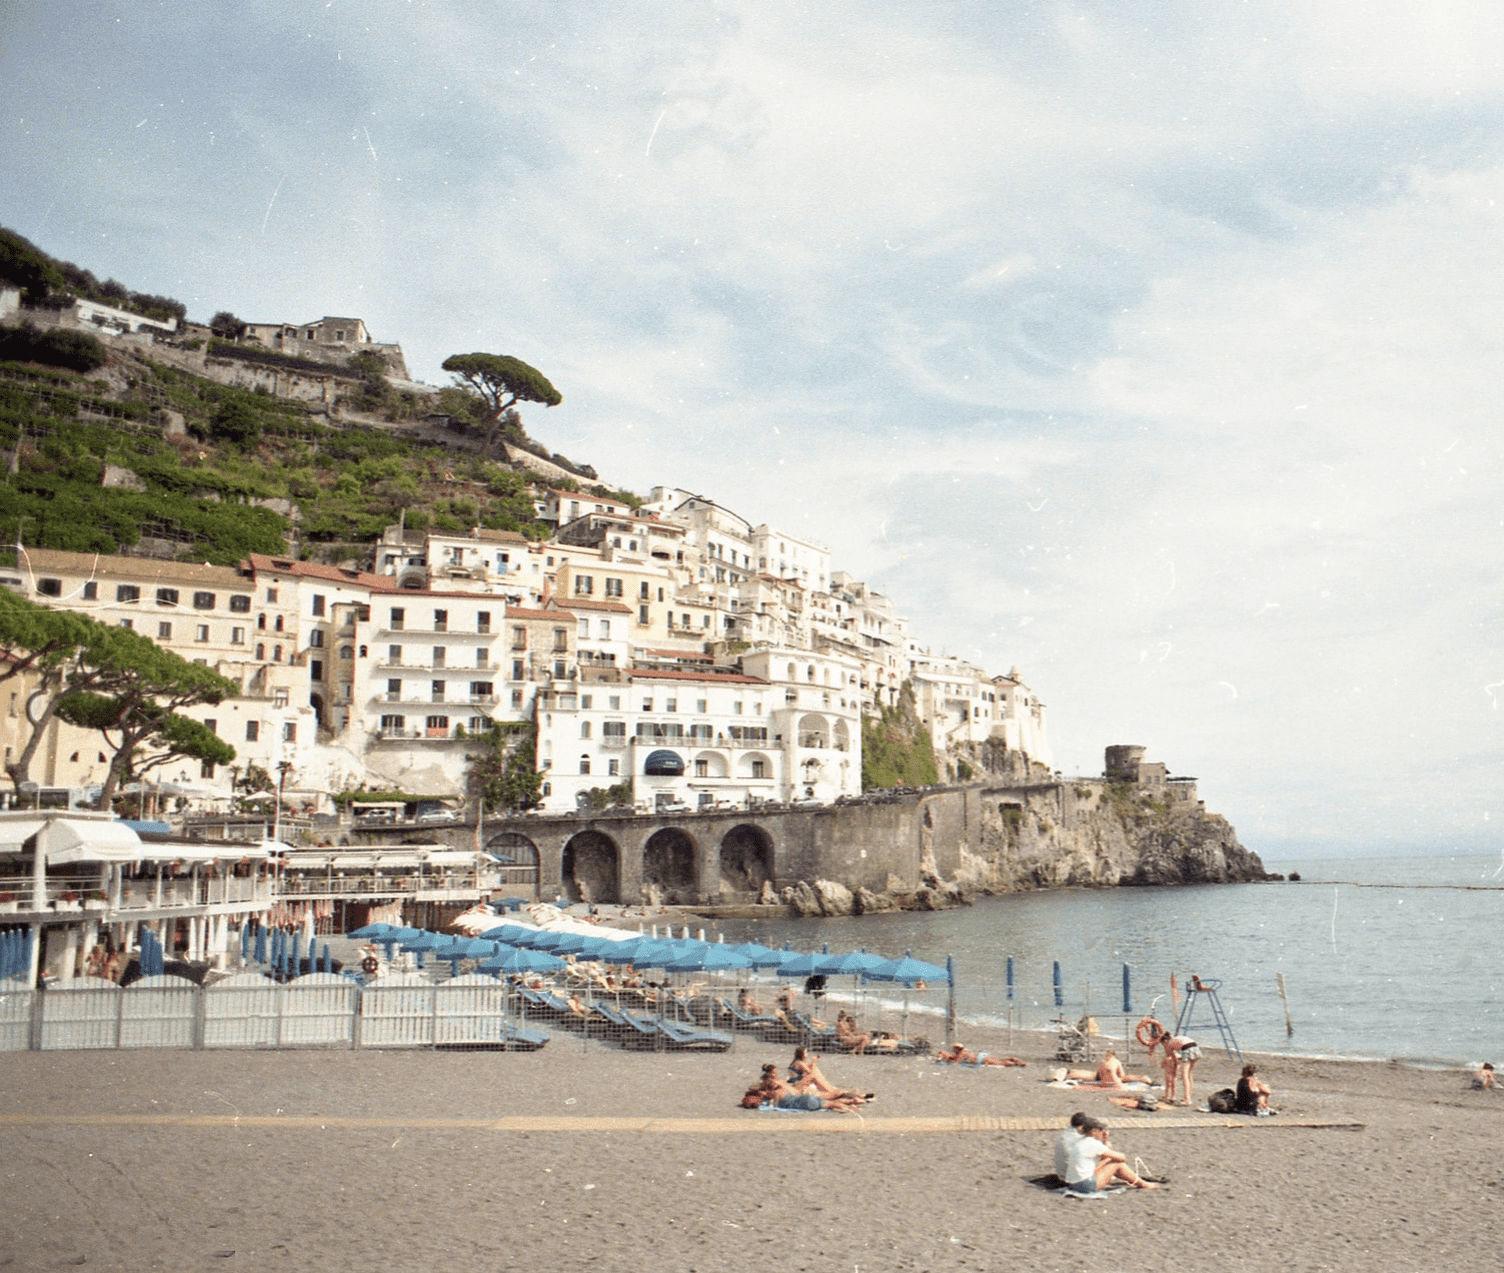 plan a trip to the Amalfi Coast